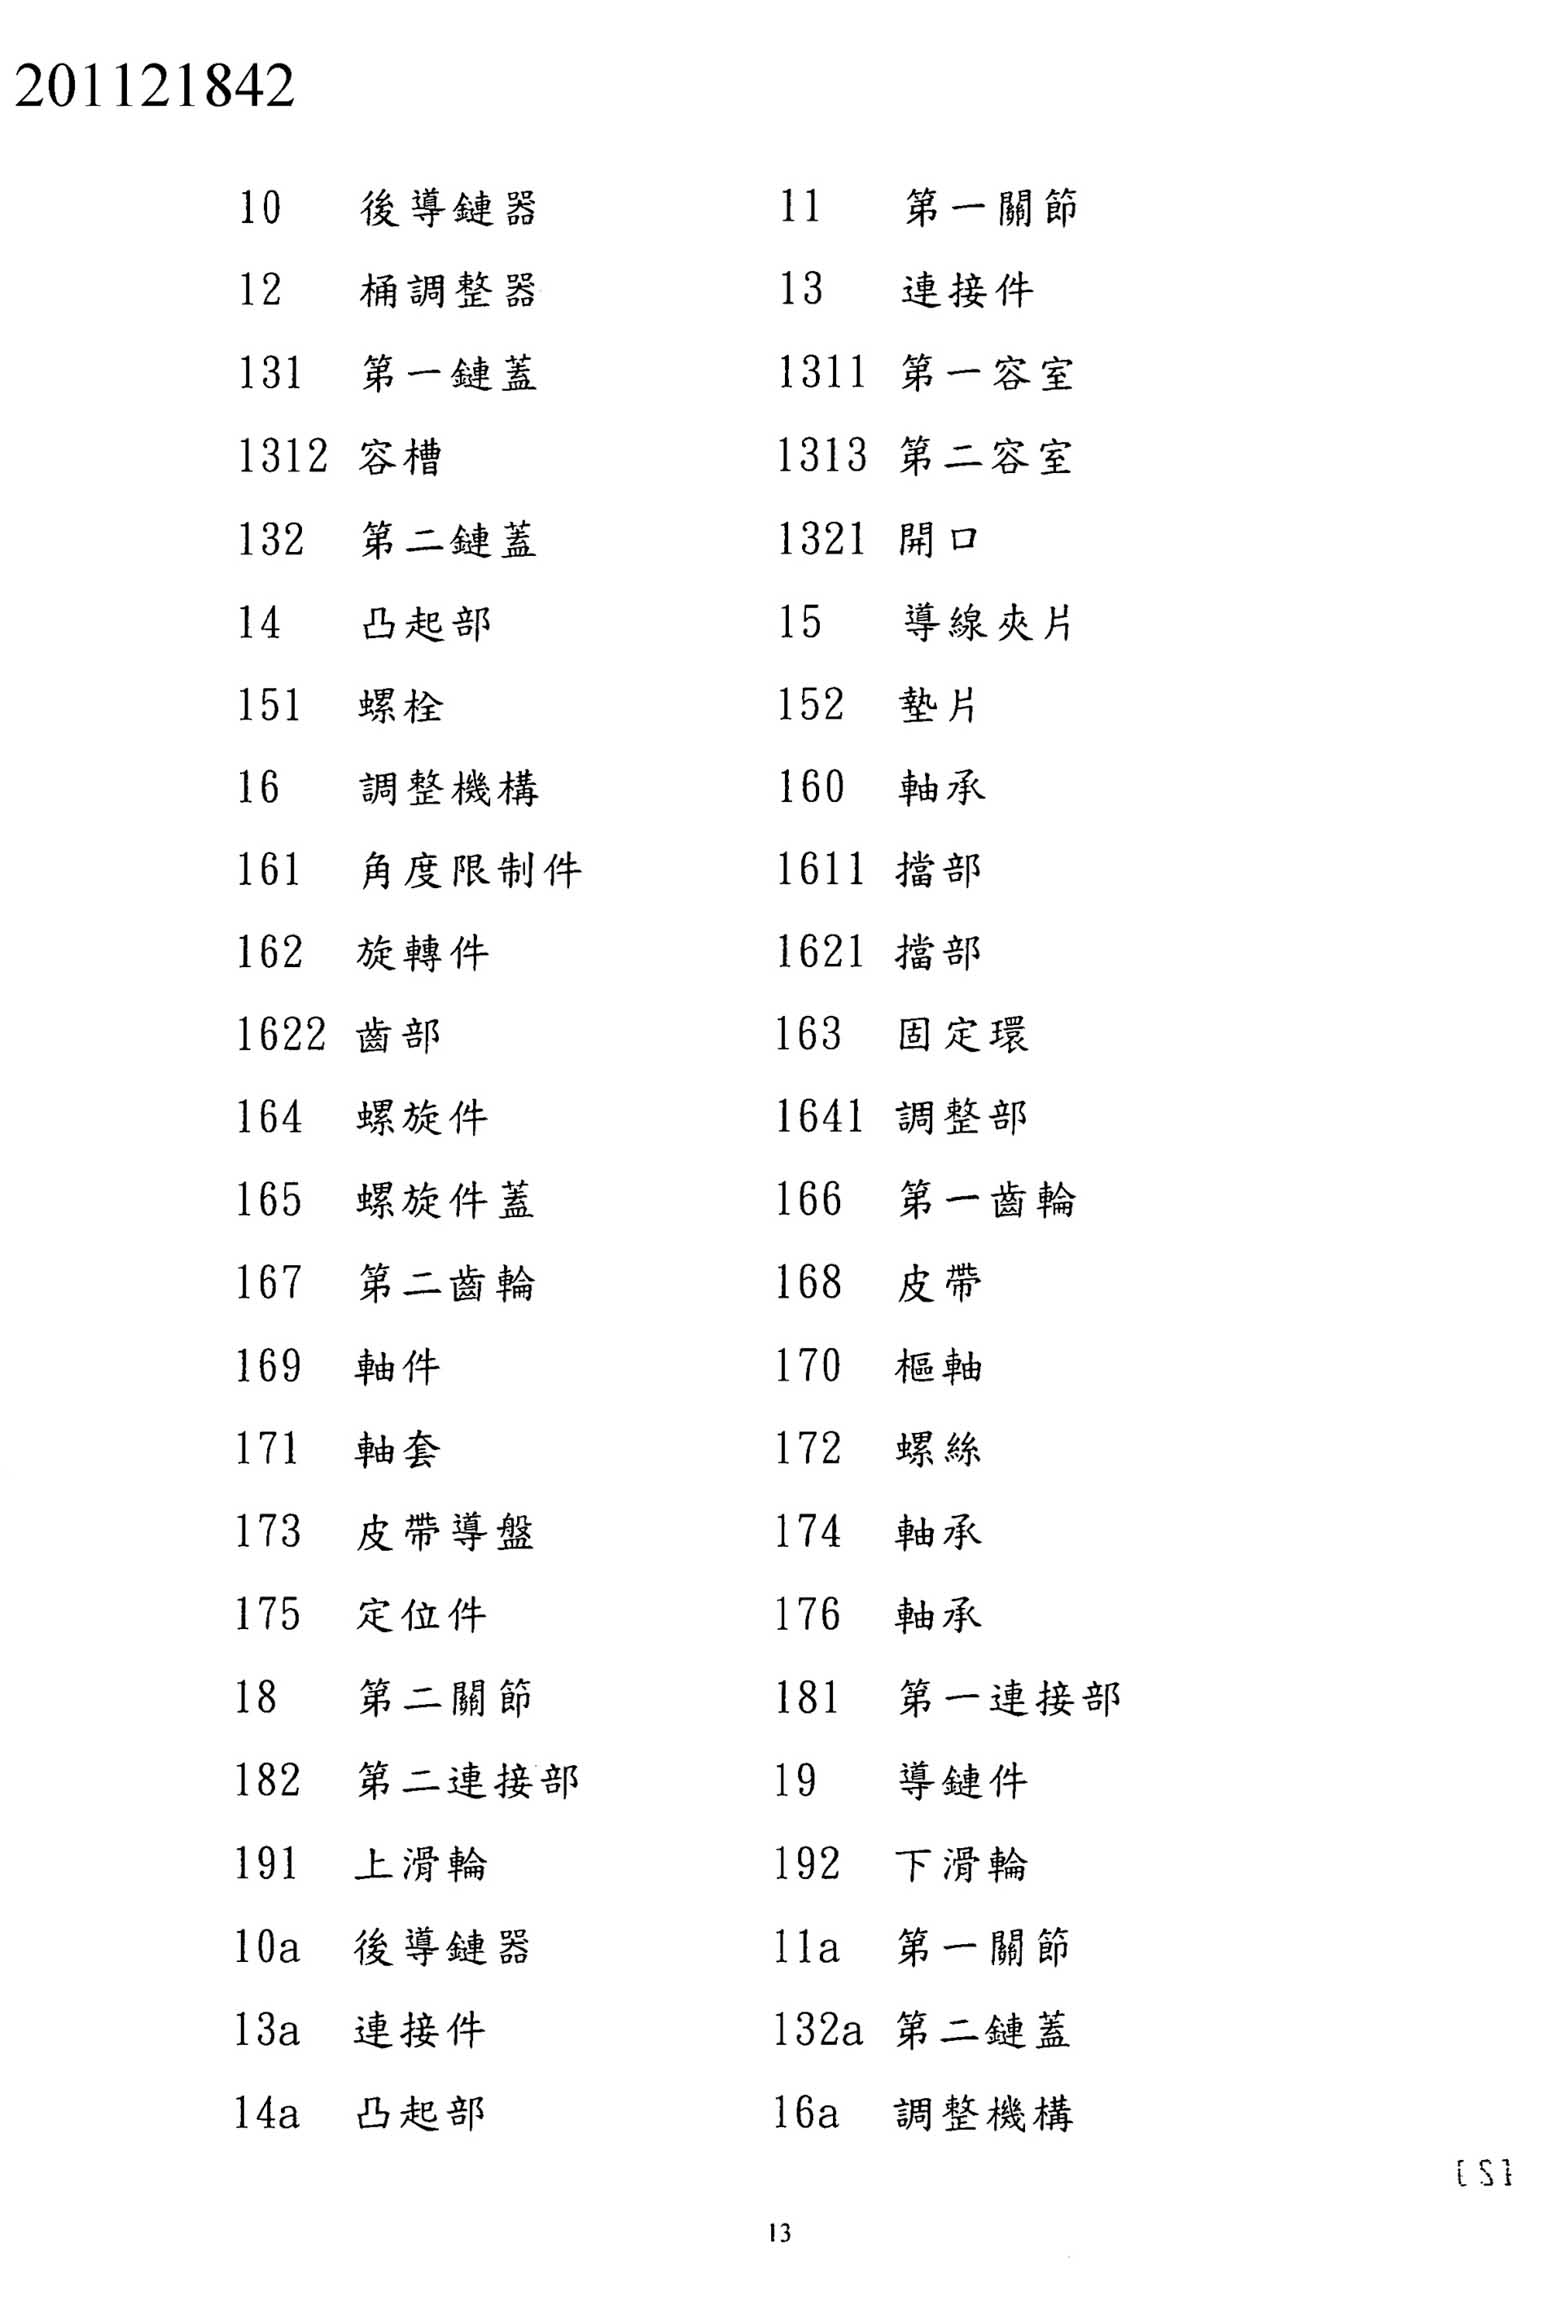 Taiwanese Patent 201121842 - FSA scan 13 main image